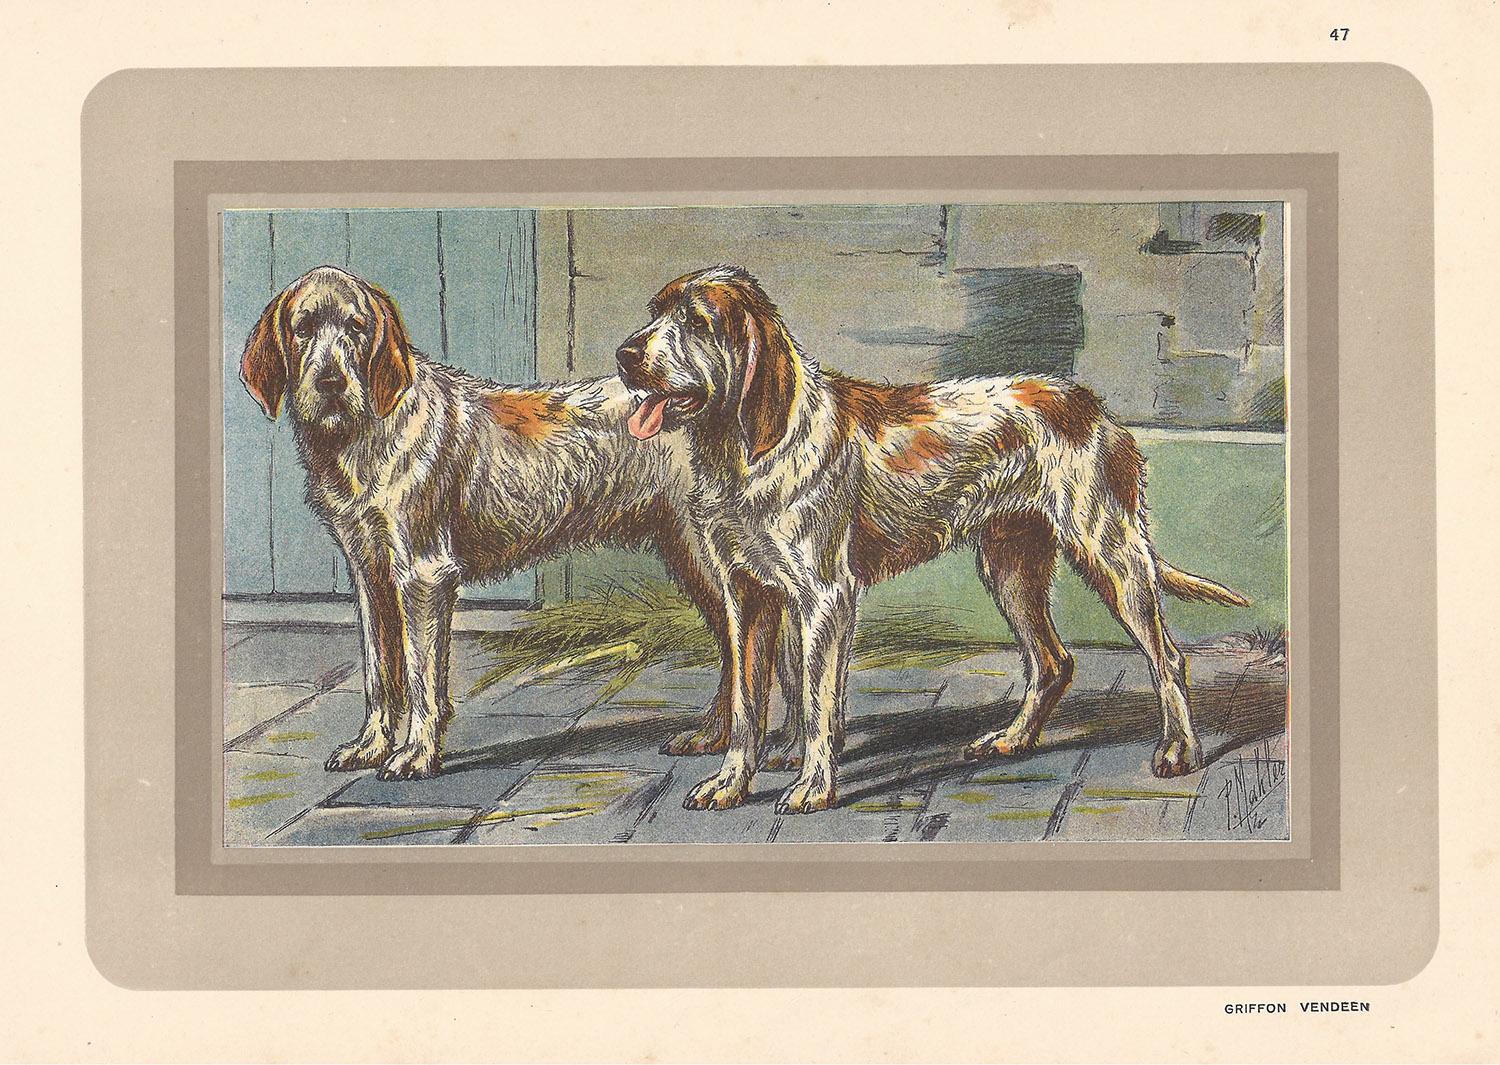 Griffon Vendeens, chien chromolithographe franais, annes 1930